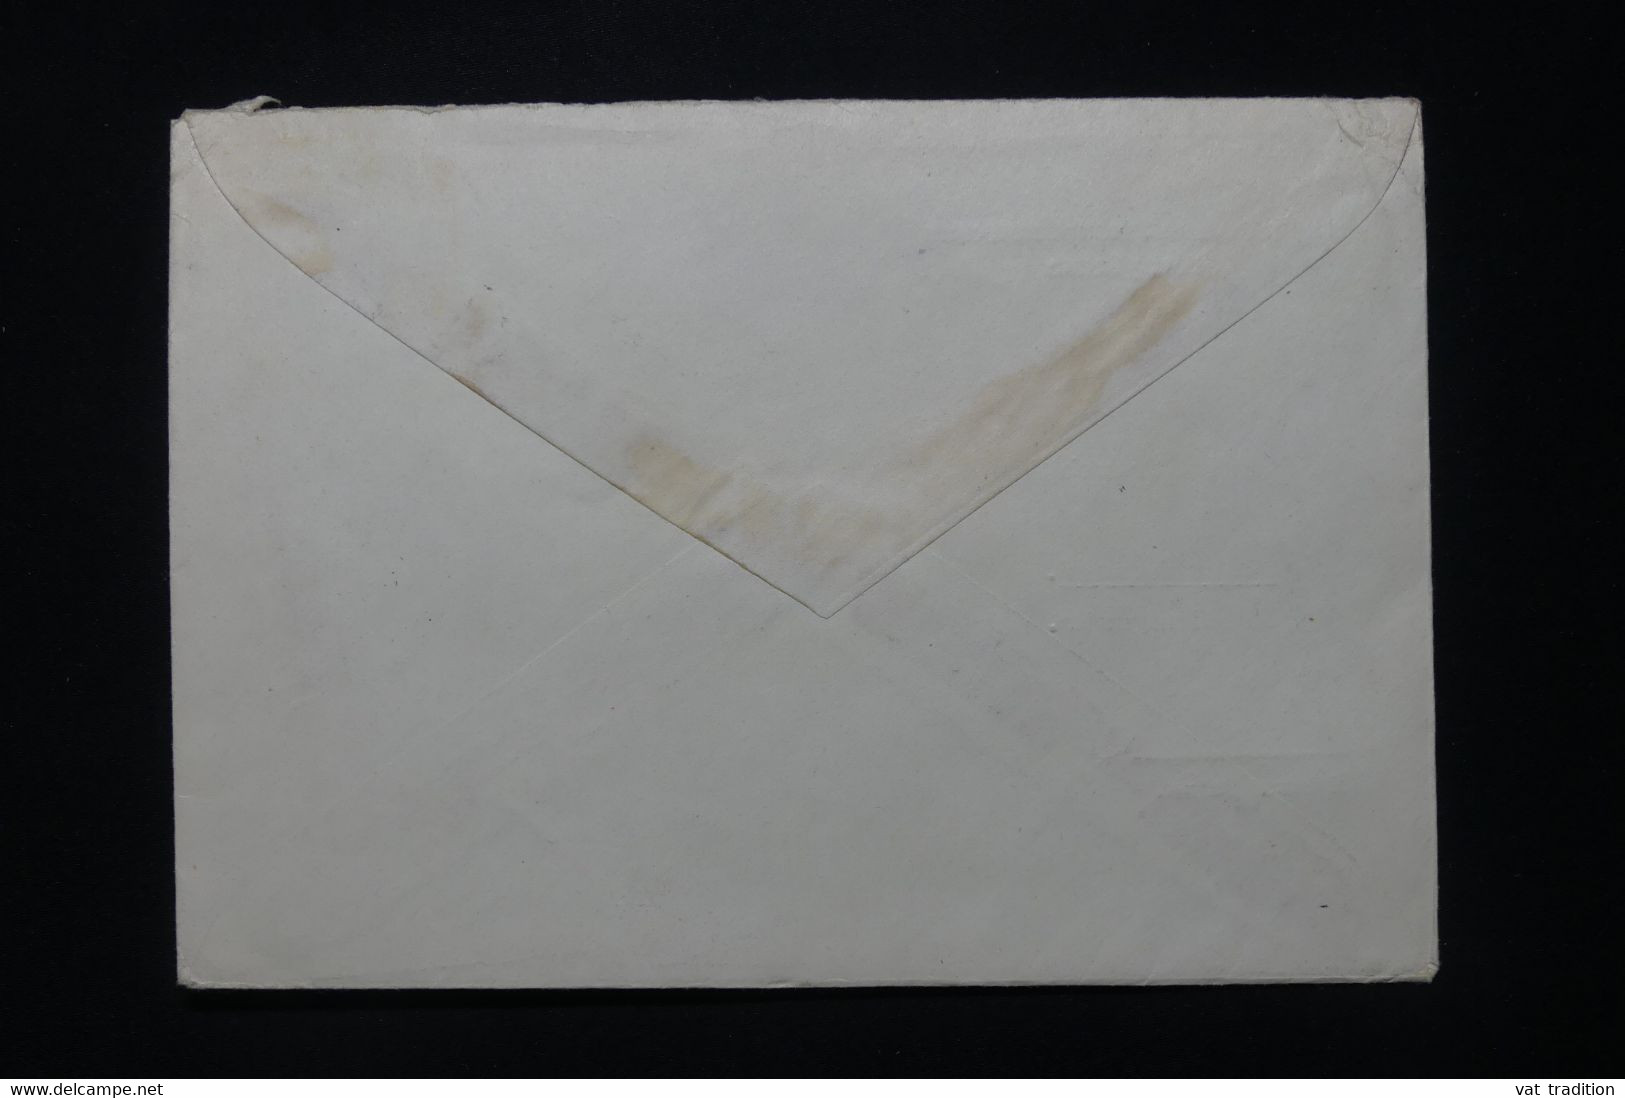 U.R.S.S. - Enveloppe De Moscou Pour L 'Allemagne En 1953 - L 92339 - Brieven En Documenten